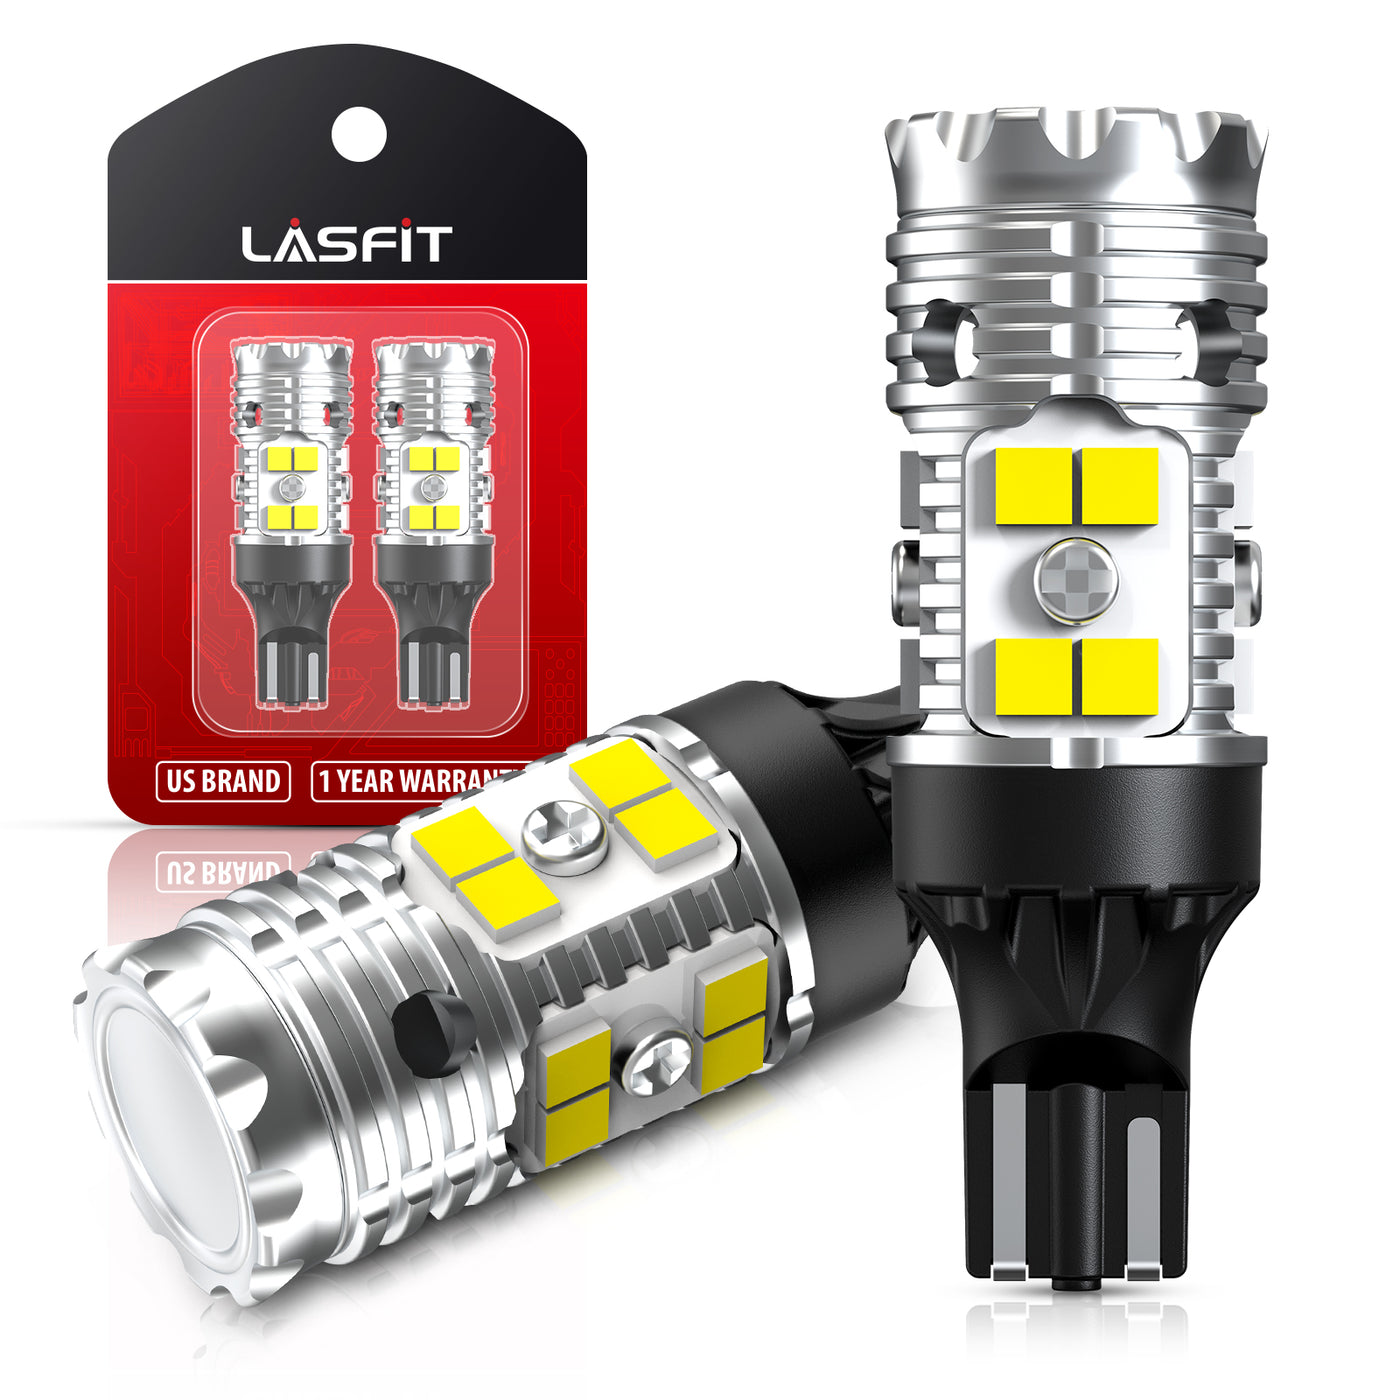 SL.GT Ampoules LED Voiture T10 W5W 12v Clair Fibre de Verre